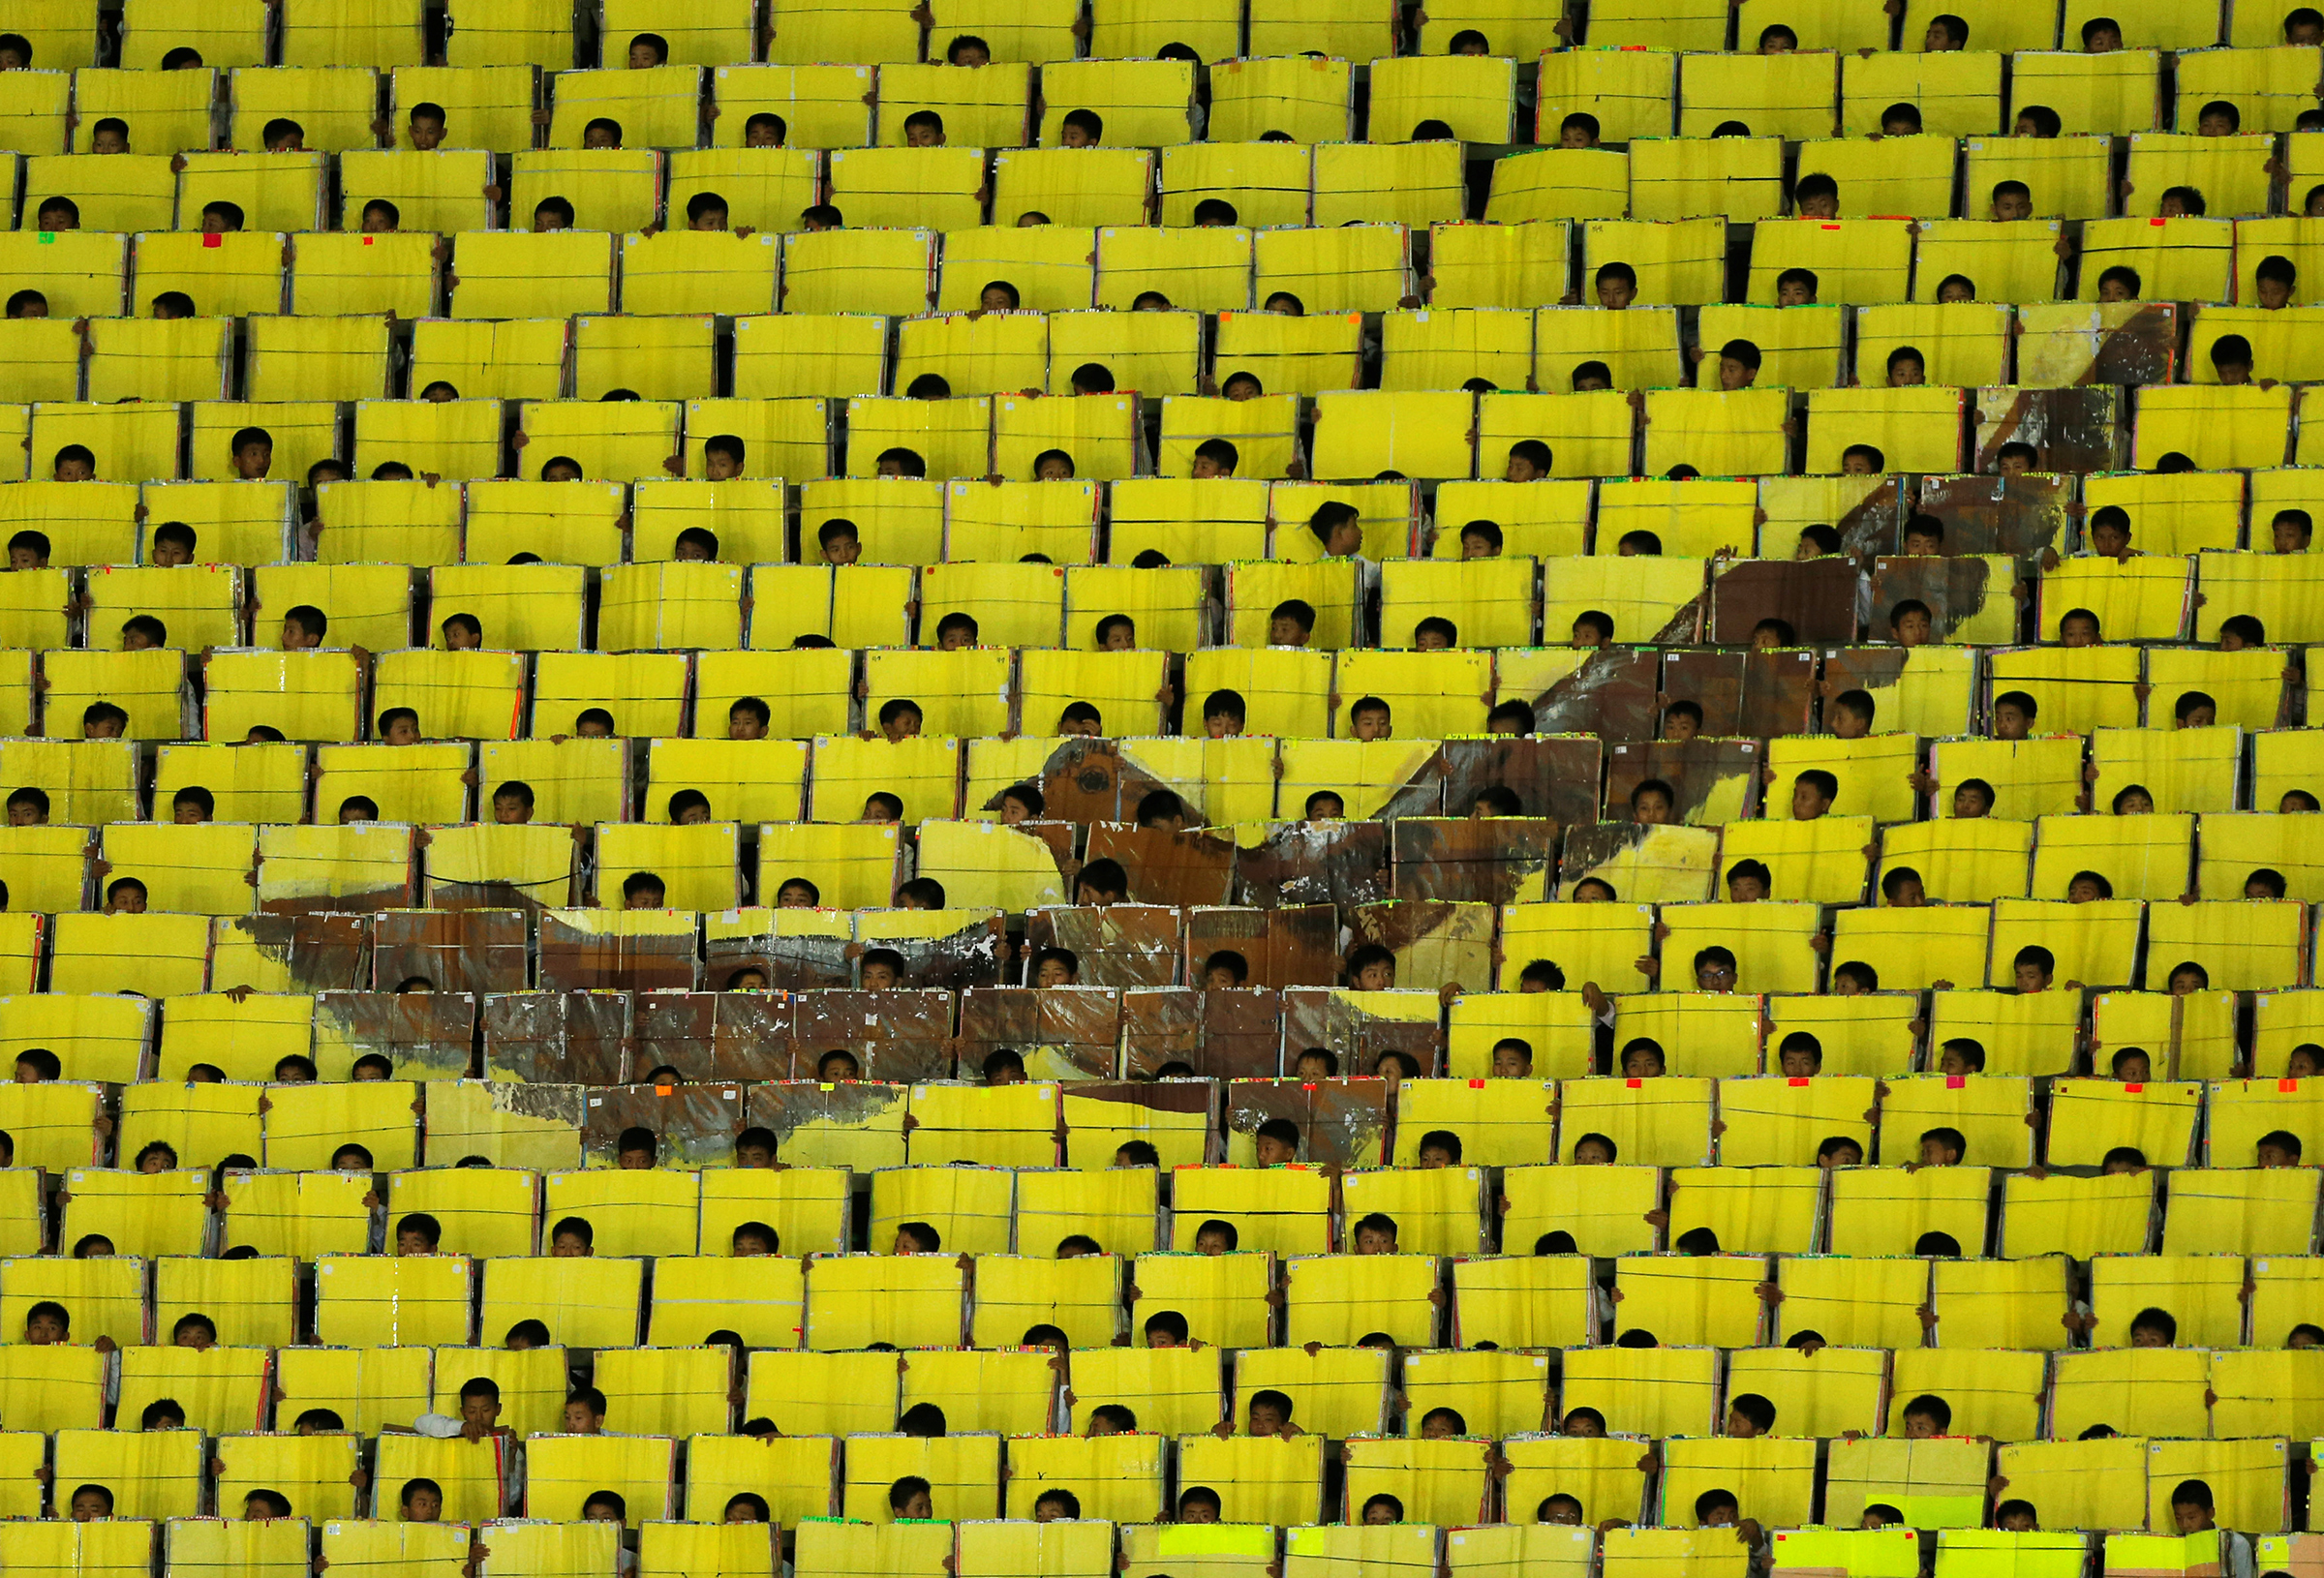 &laquo;Игры&raquo; проводятся в столице КНДР Пхеньяне на стадионе Первого мая, который находится на песчаном острове Ныннадо. Стадион общей площадью 207&nbsp;тыс. кв. м&nbsp;рассчитан на 150 тыс. зрителей
&nbsp;